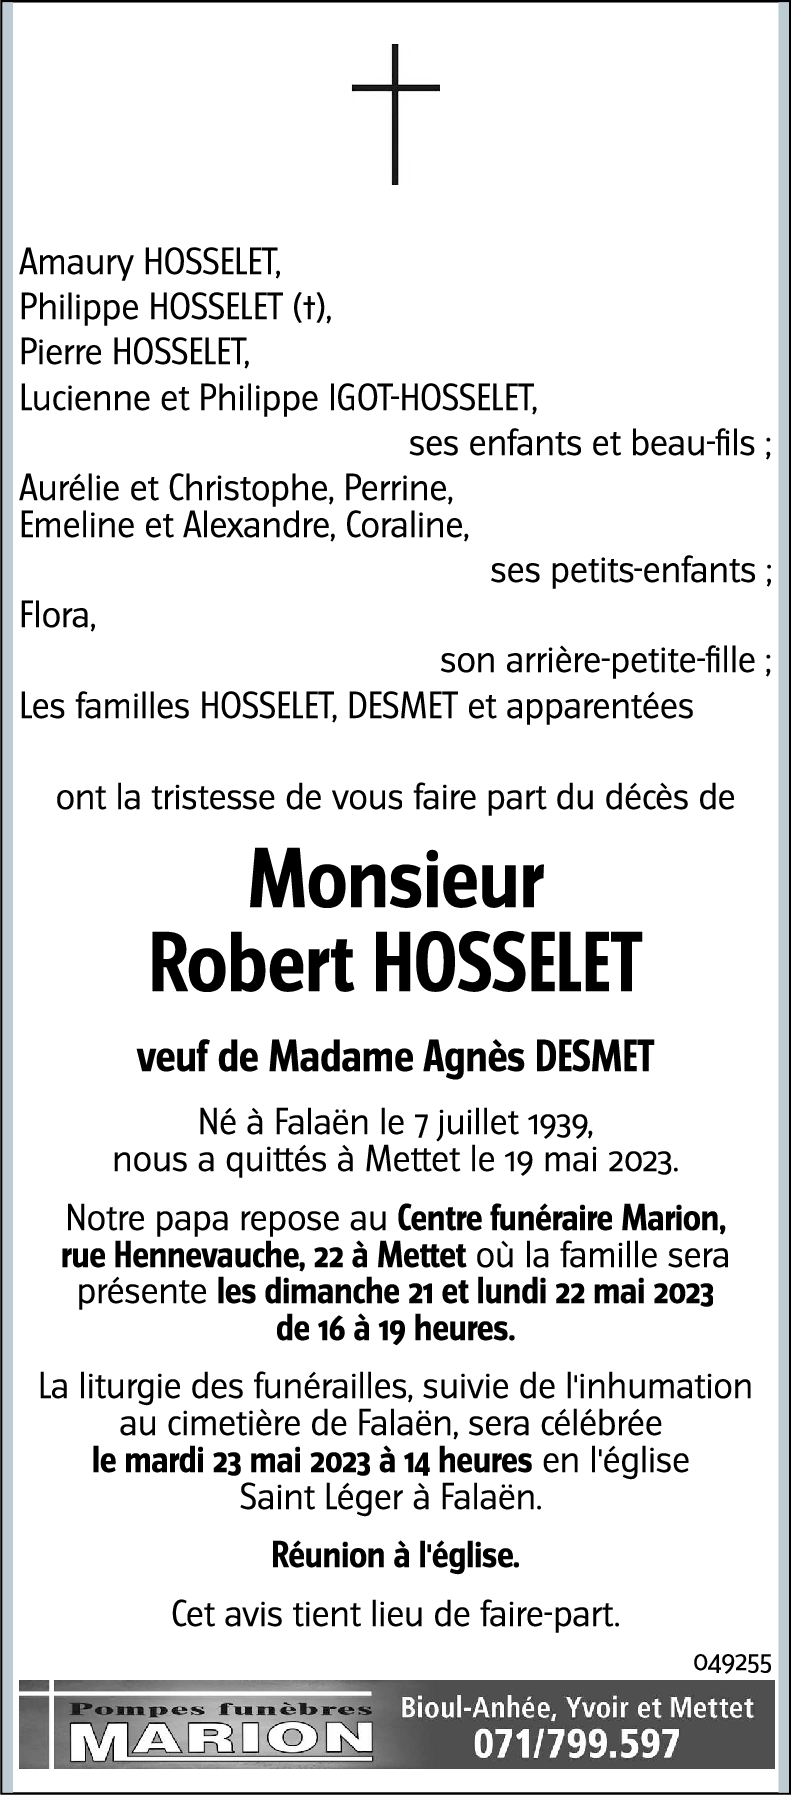 Robert HOSSELET